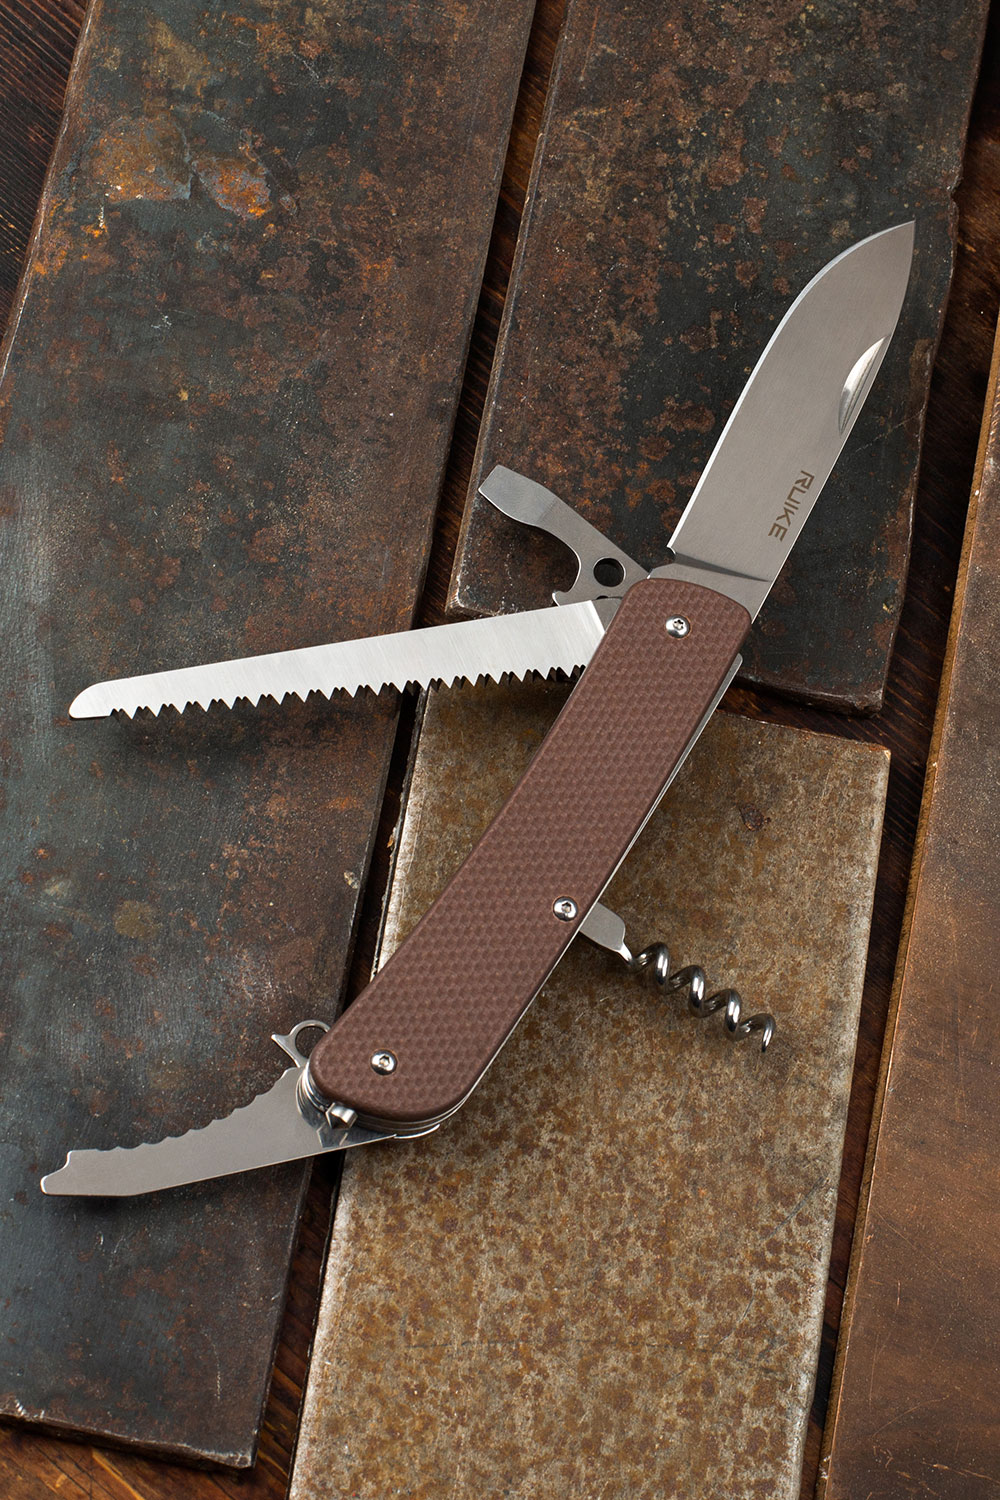 картинка Нож multi-functional Ruike L32-N коричневвый